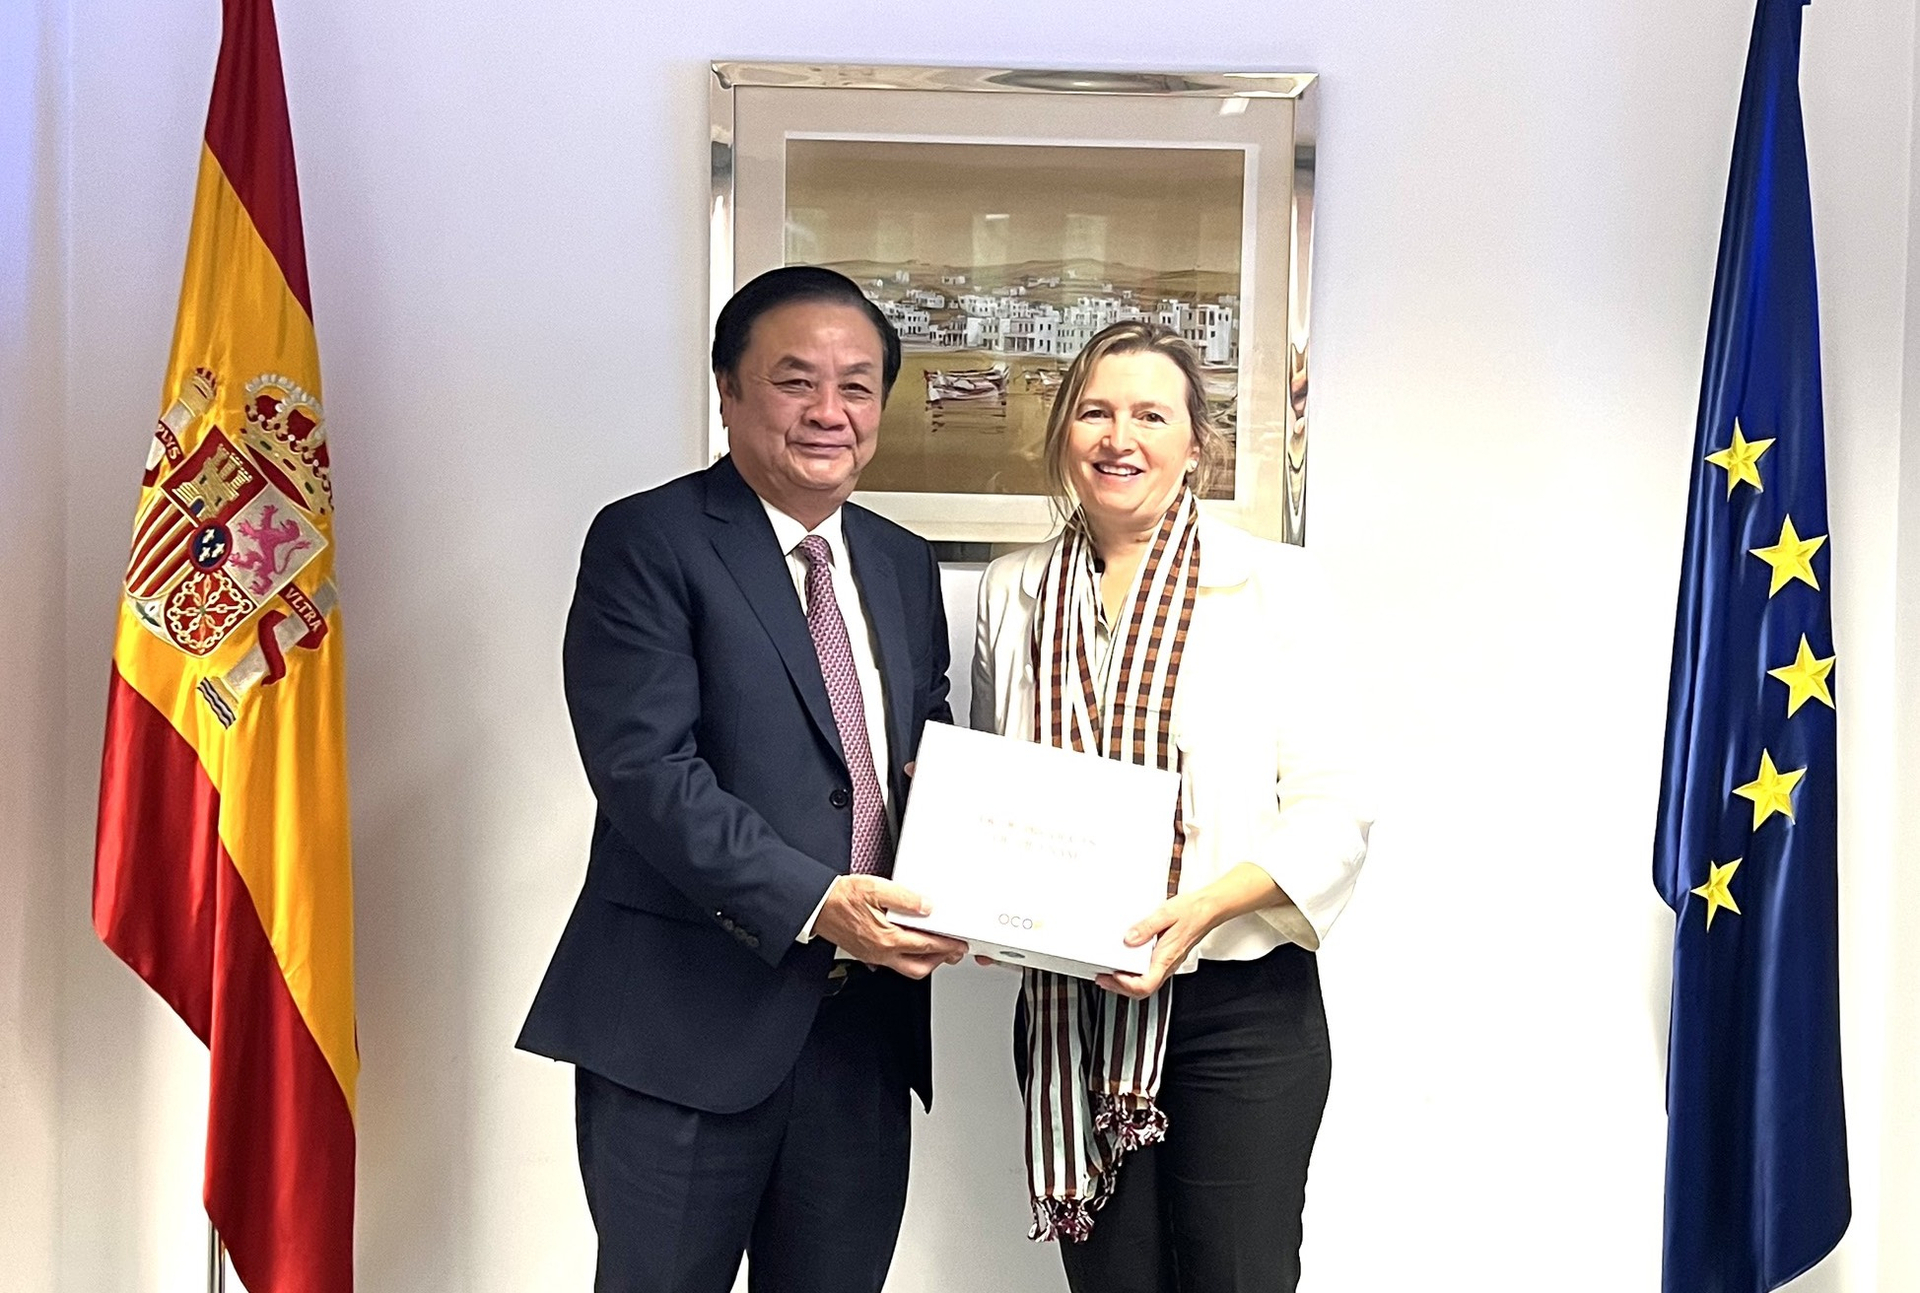 Bộ trưởng Lê Minh Hoan tặng quà cho bà Isabel Artime Garcia, Tổng Thư ký phụ trách Thủy sản, Bộ Nông nghiệp, Thủy sản và Thực phẩm Tây Ban Nha.